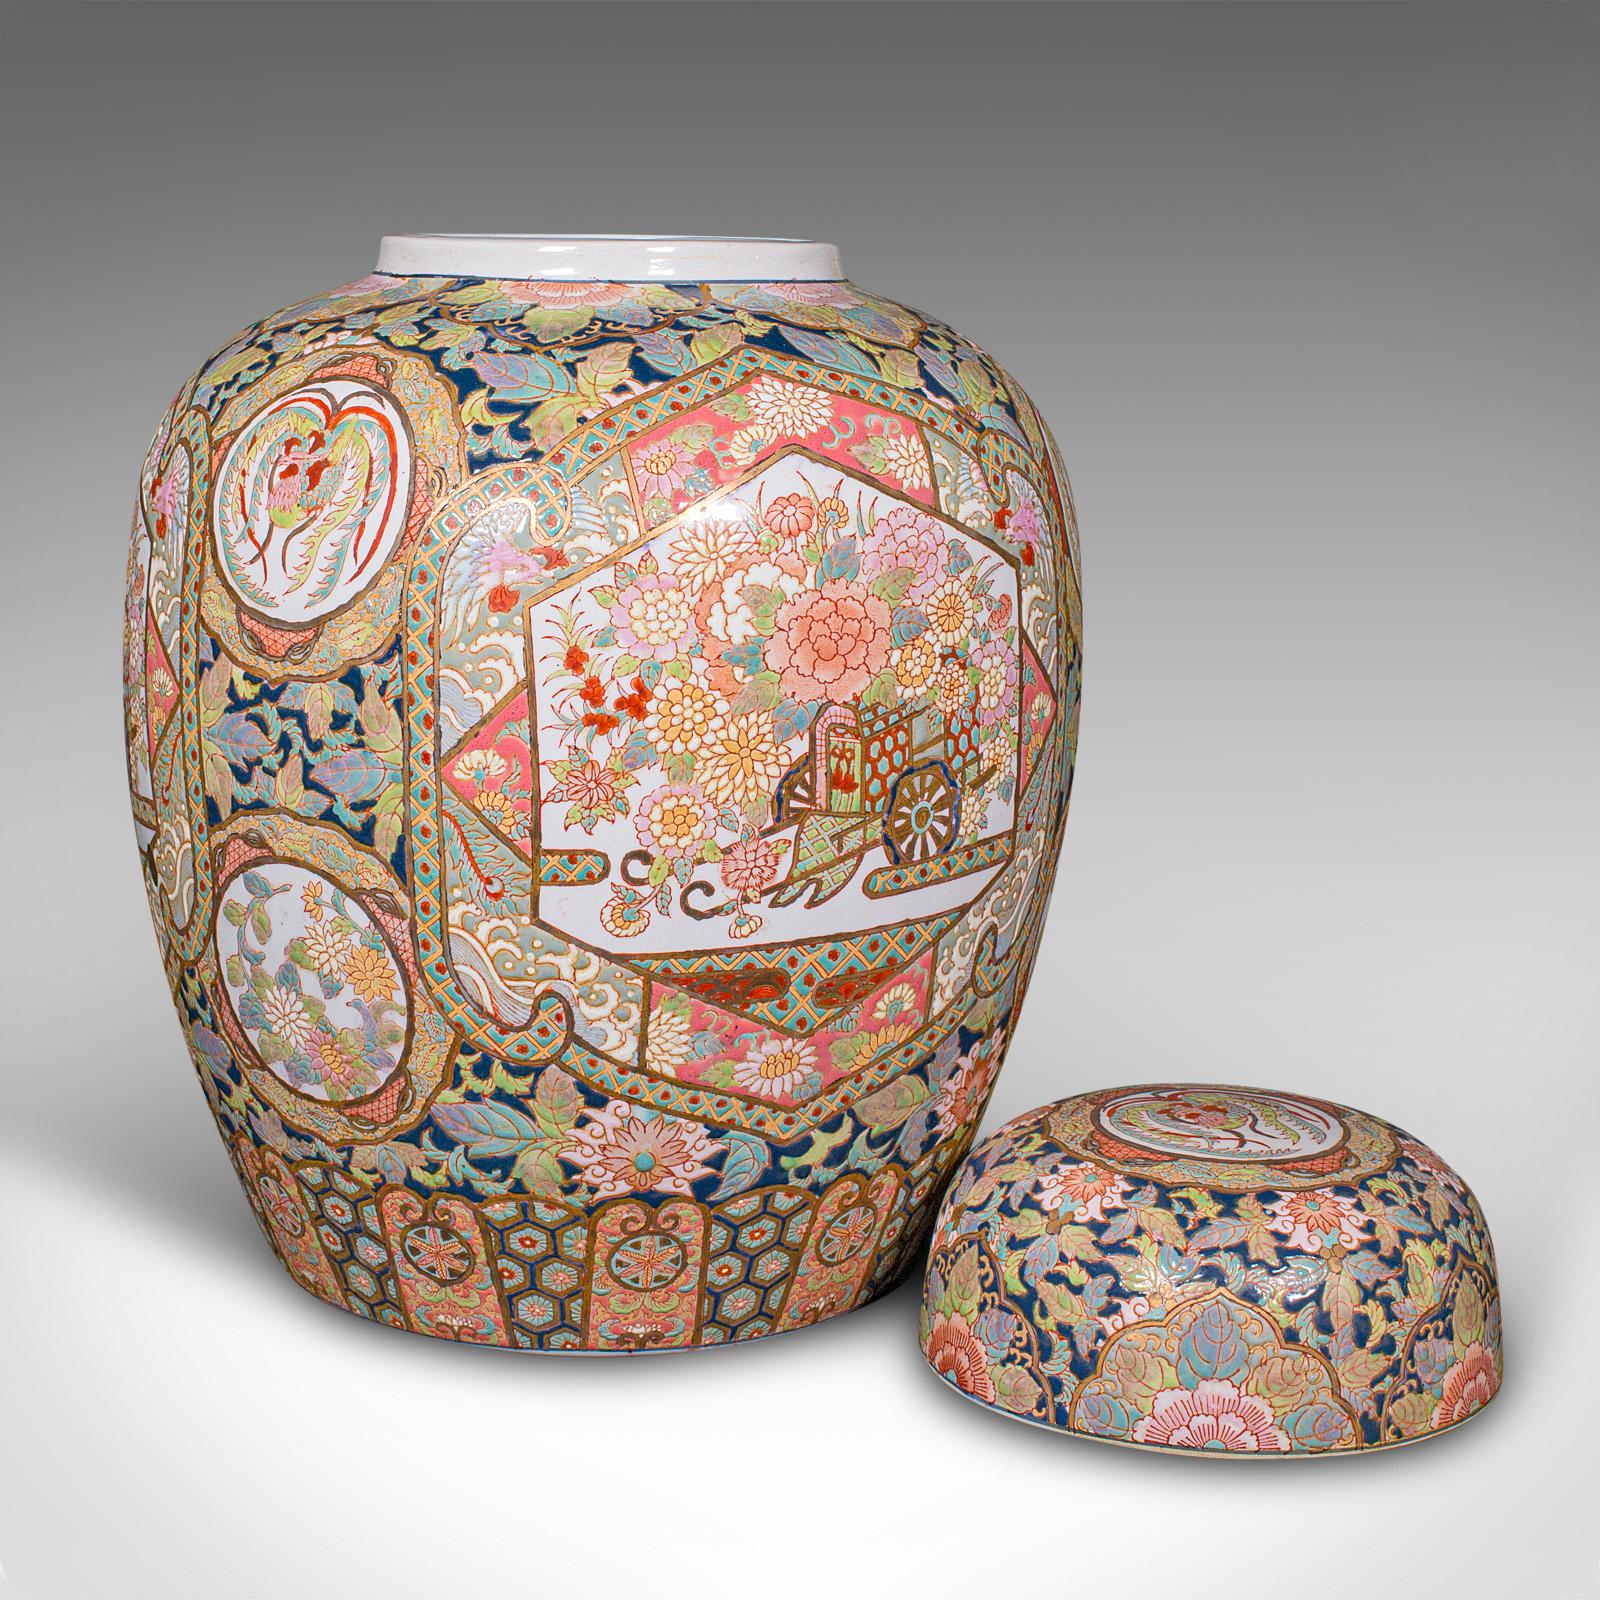 Dies ist ein großes Vintage-Ingwer-Glas. Eine chinesische Keramik-Deckelvase aus der späten Art-déco-Periode, um 1940.

Beeindruckende Proportionen, die eine breite Leinwand für die üppige Dekoration bieten
Zeigt eine wünschenswerte gealterte Patina